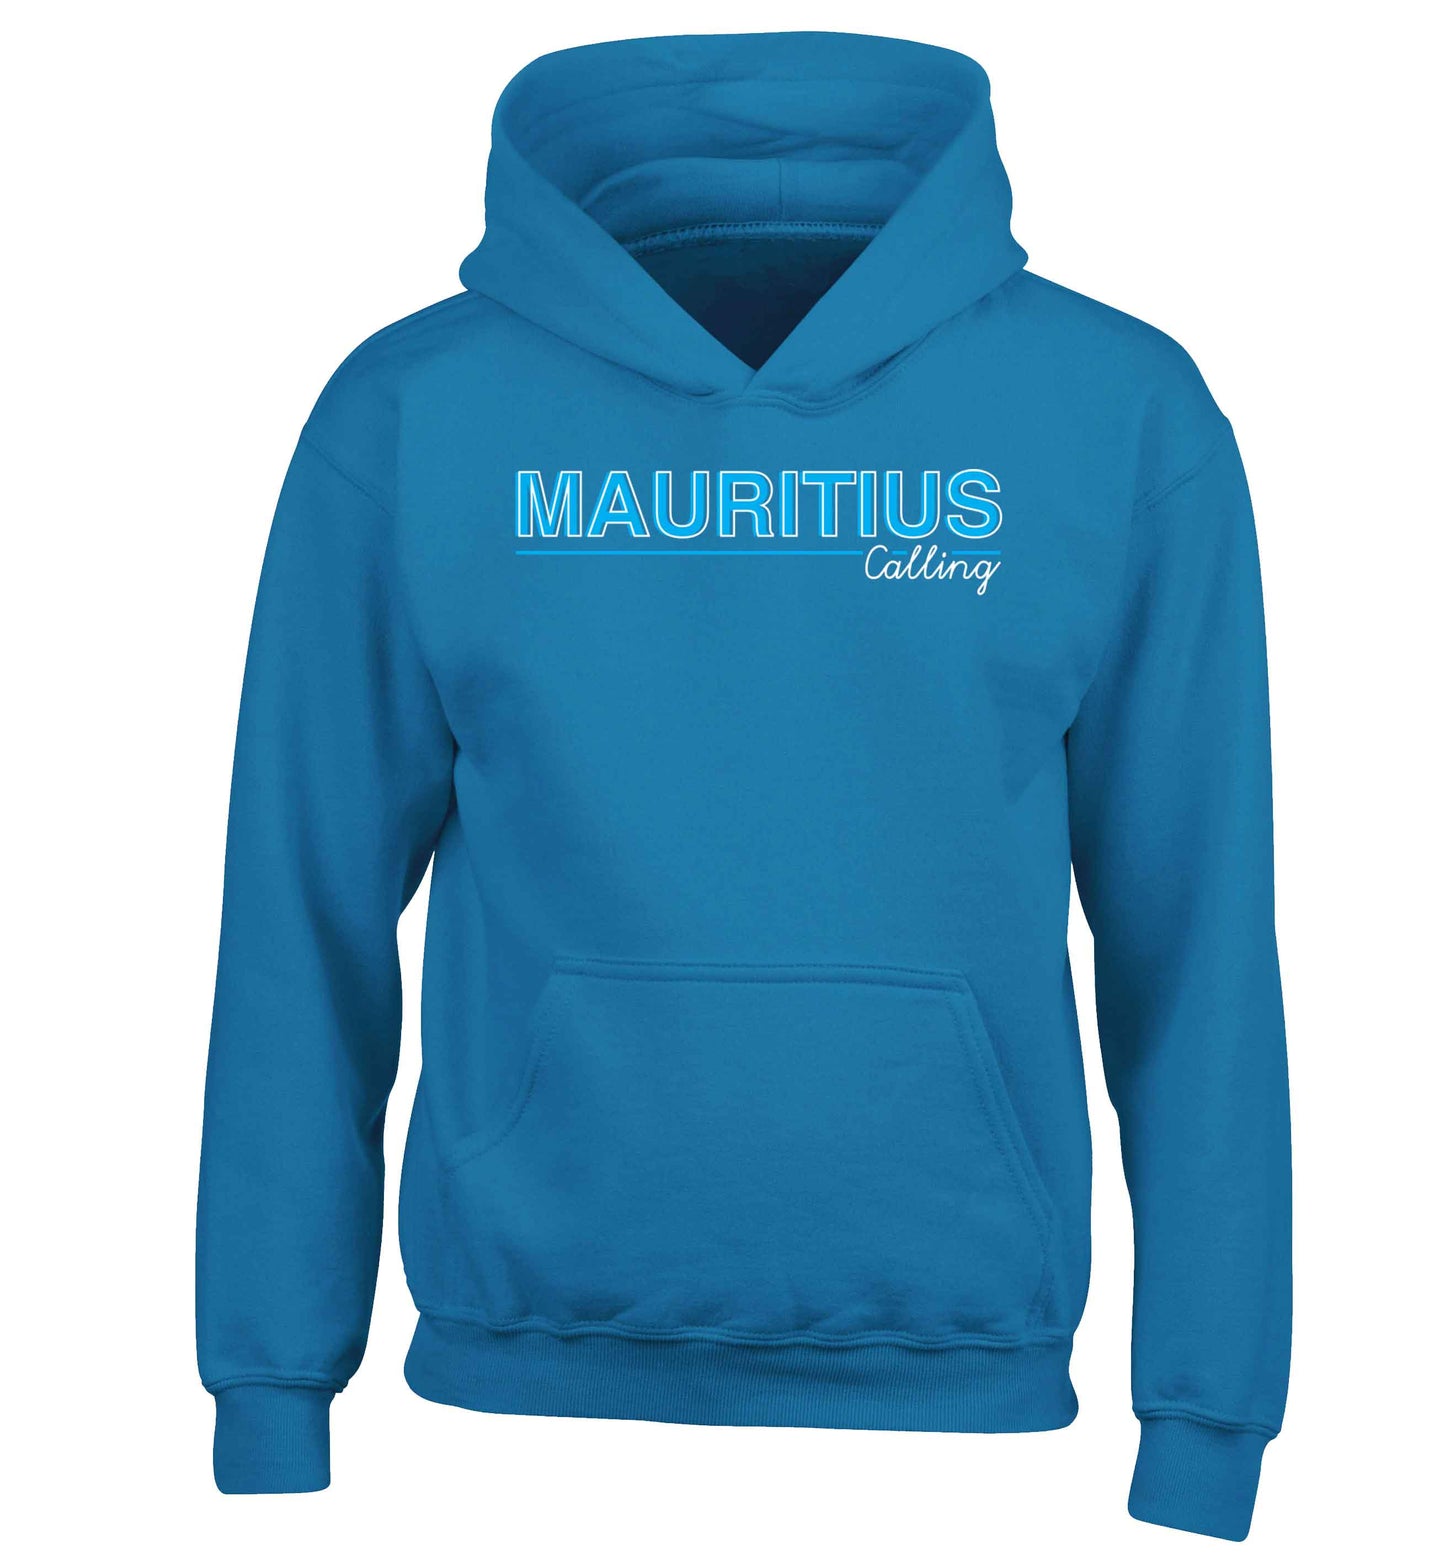 Mauritius calling children's blue hoodie 12-13 Years